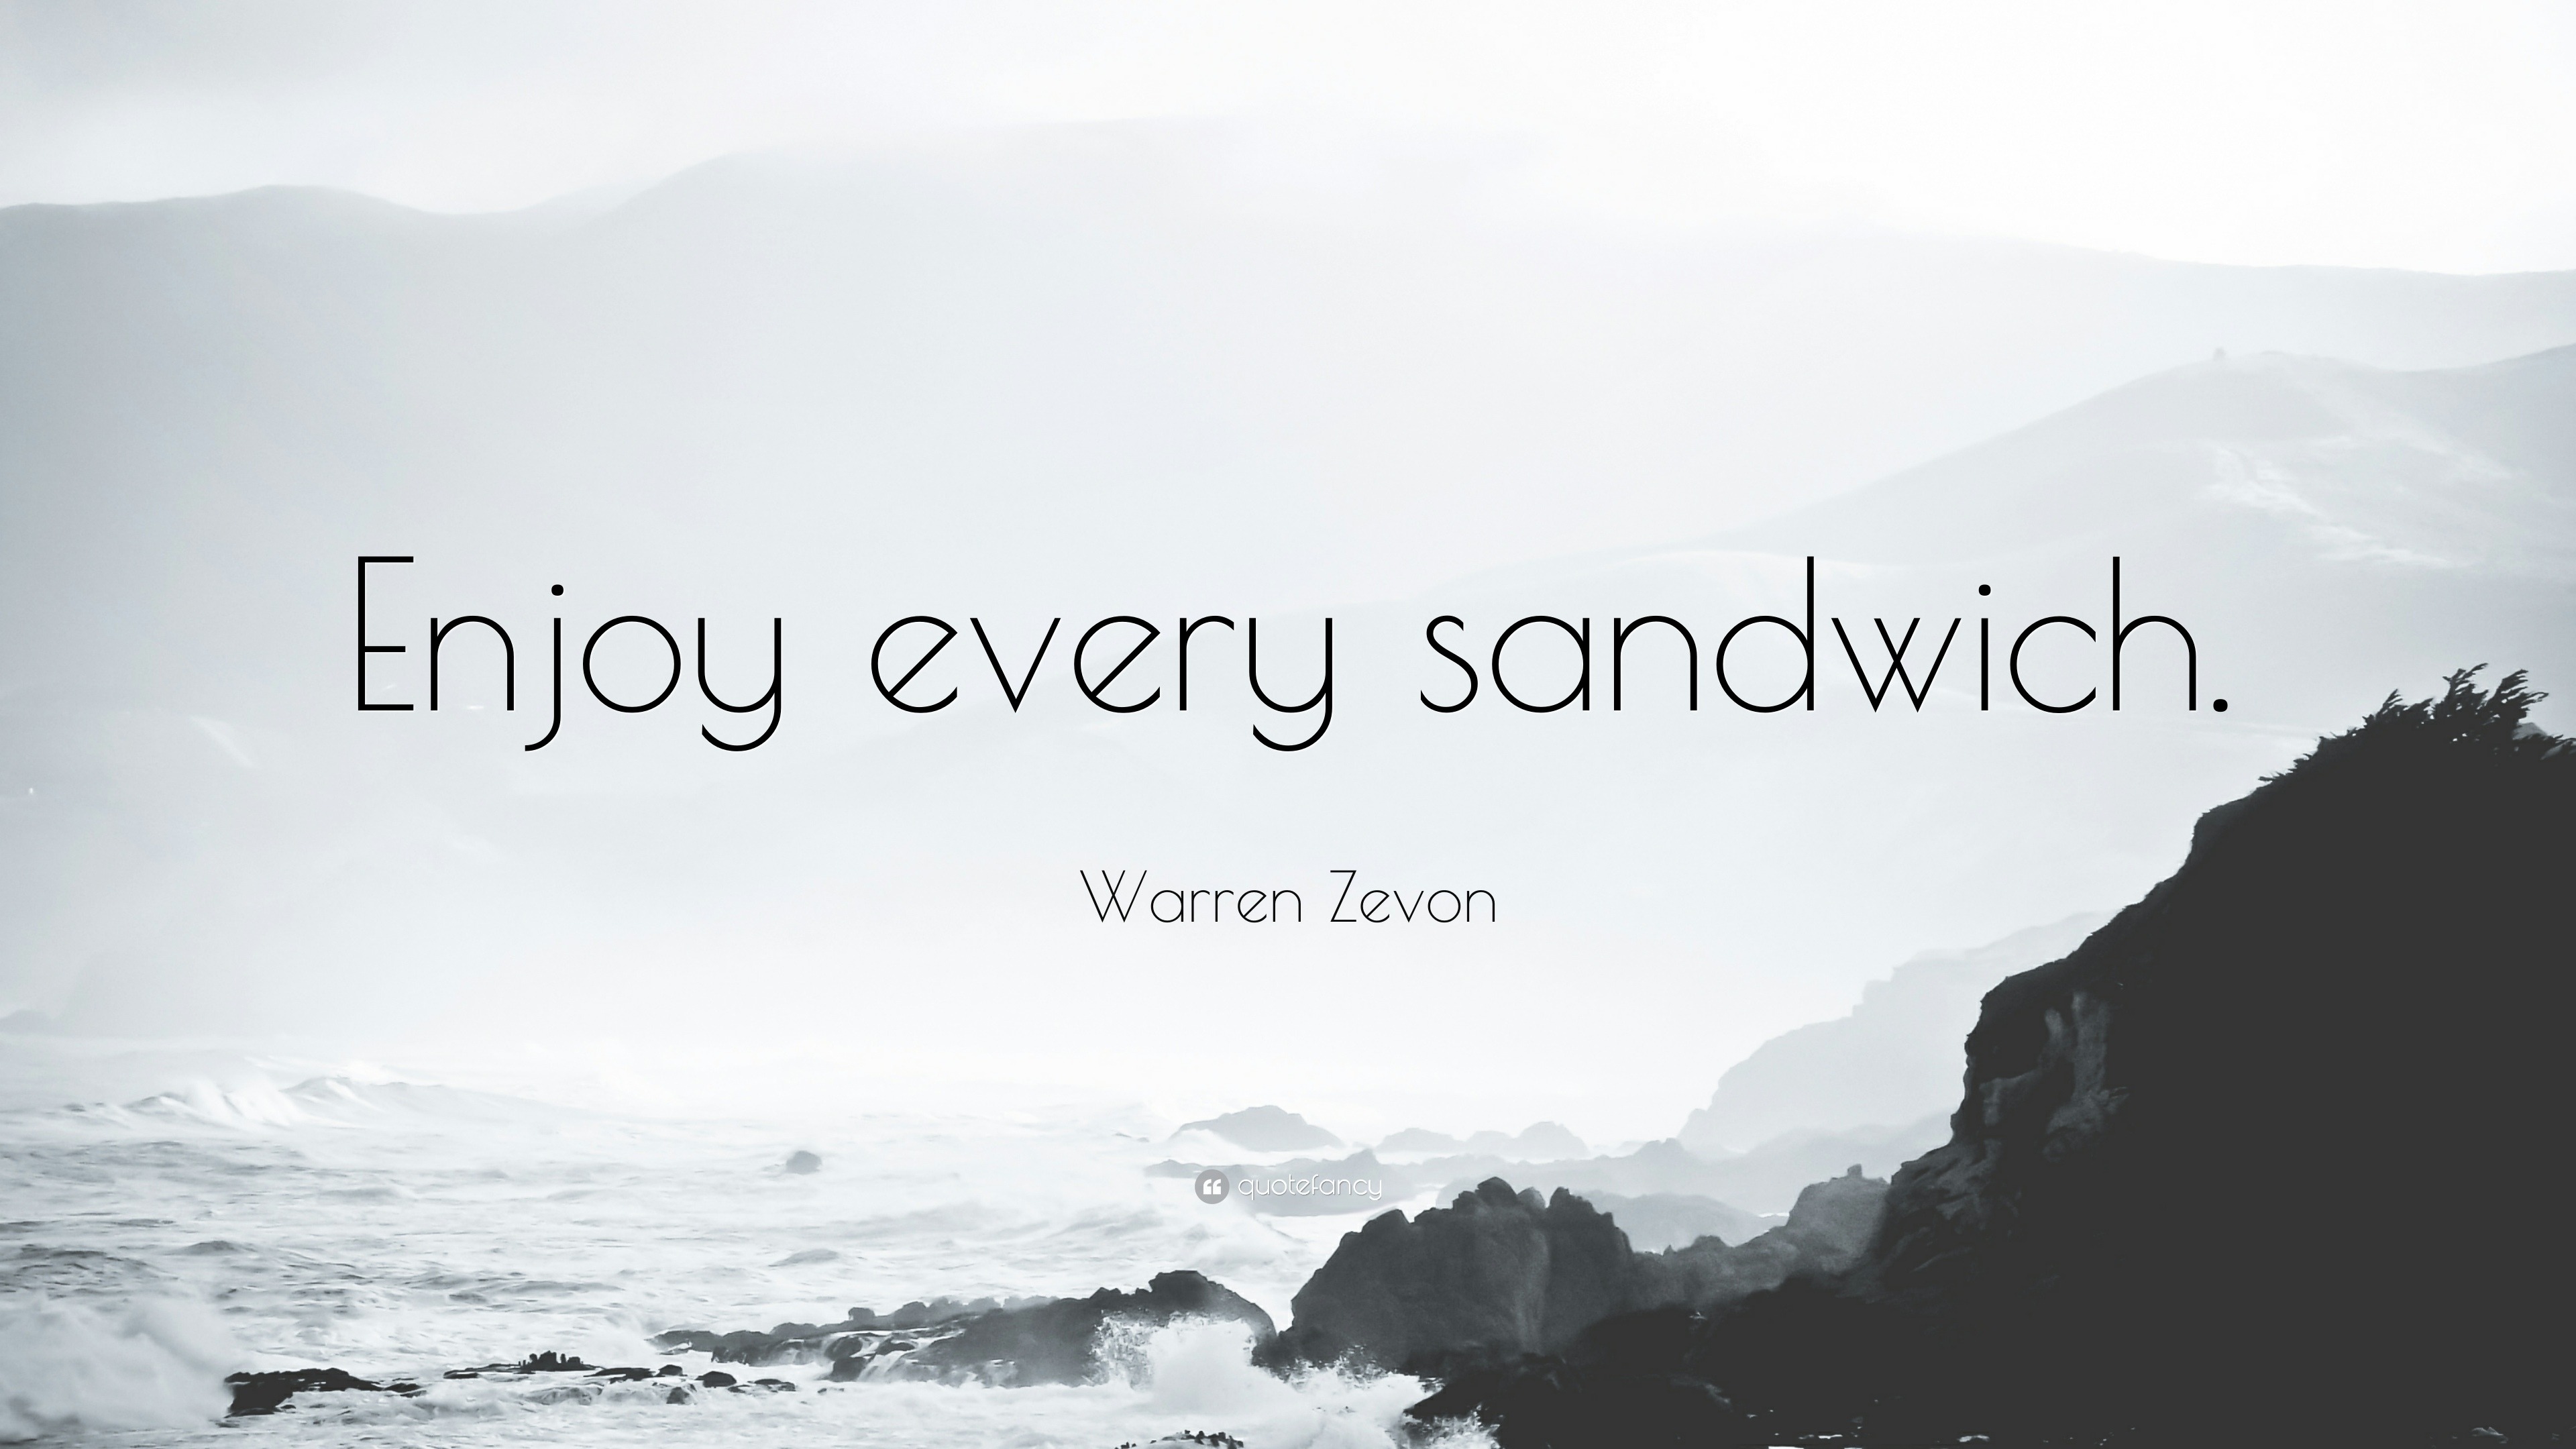 warren zevon enjoy every sandwich quote